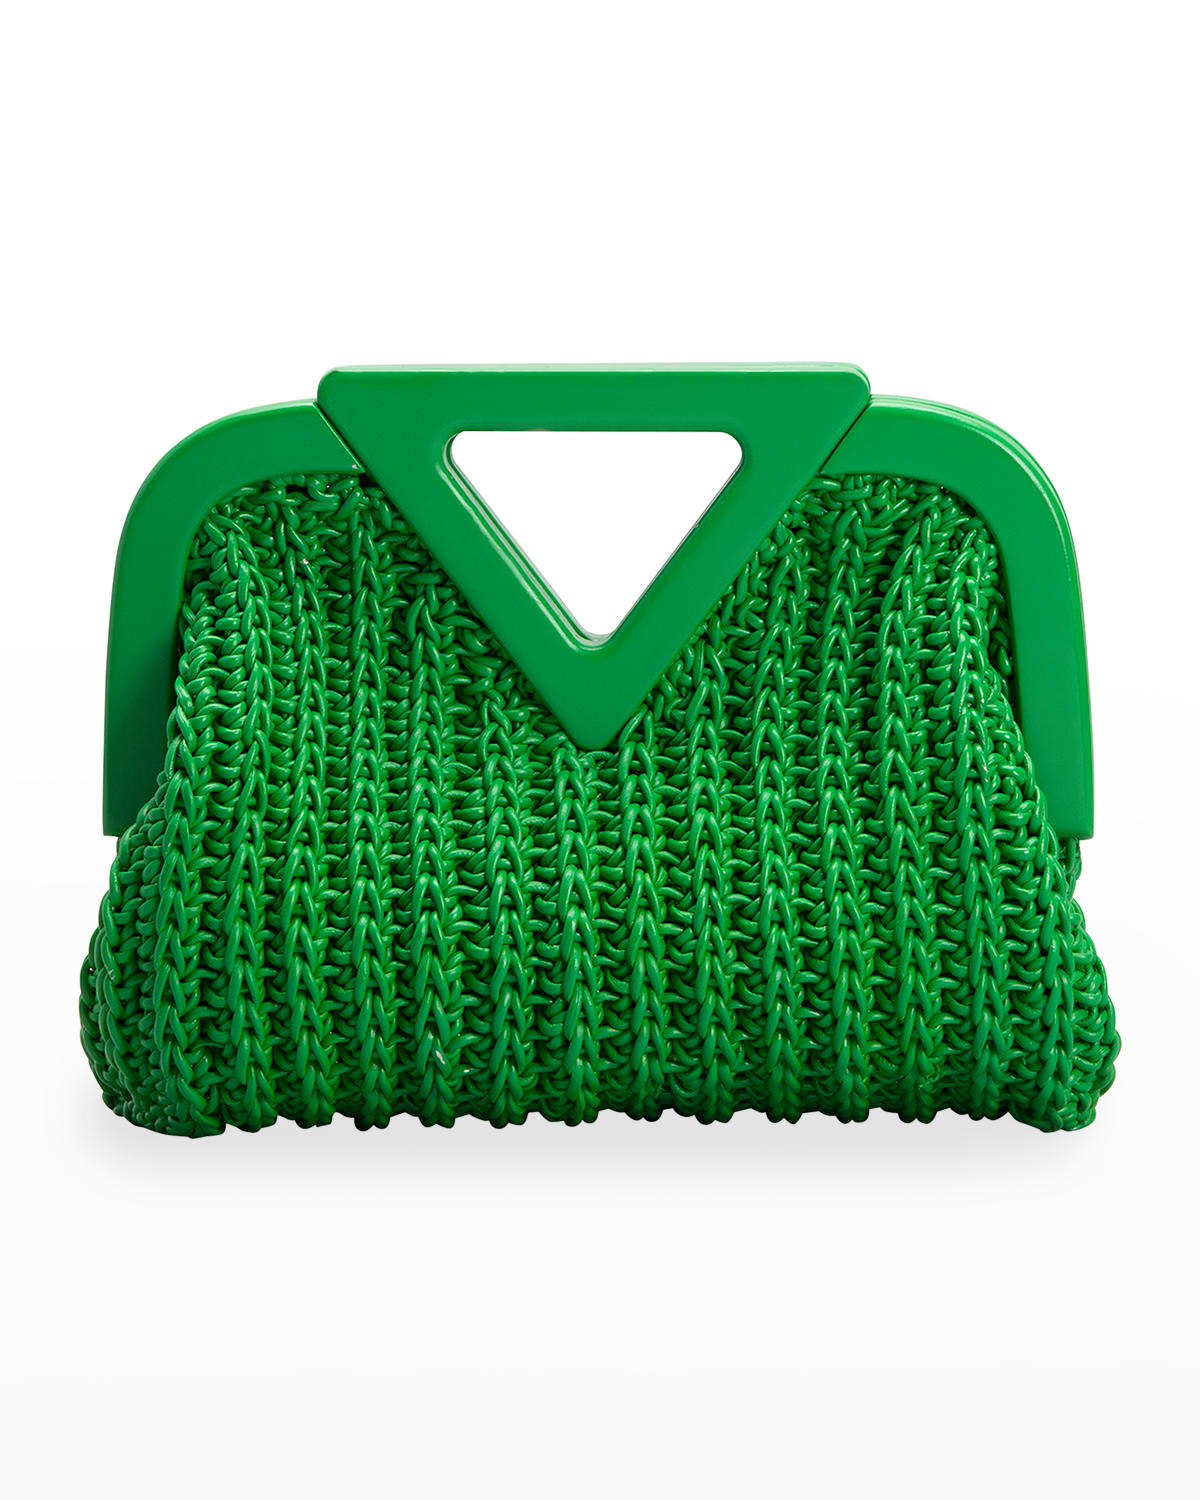 Bottega Veneta Point Small Crochet Top-Handle Bag